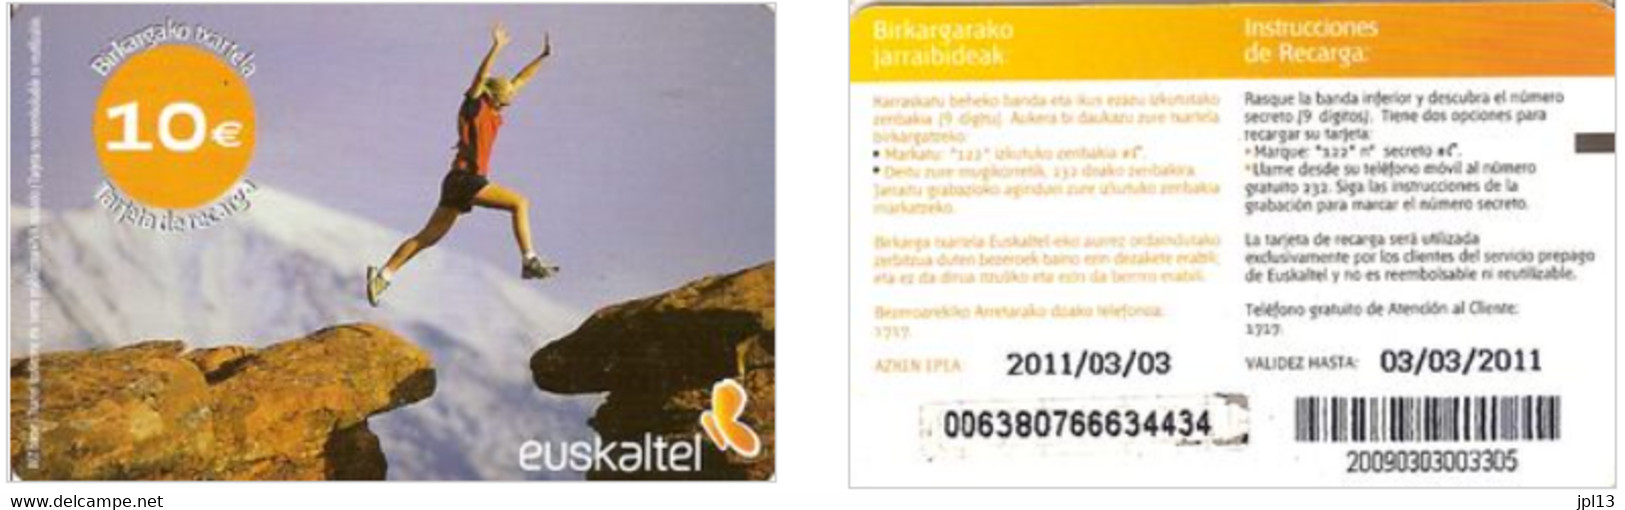 Recharge GSM - Euskaltel - Runner In Moutain, Exp. 03/03/2011 - Euskaltel